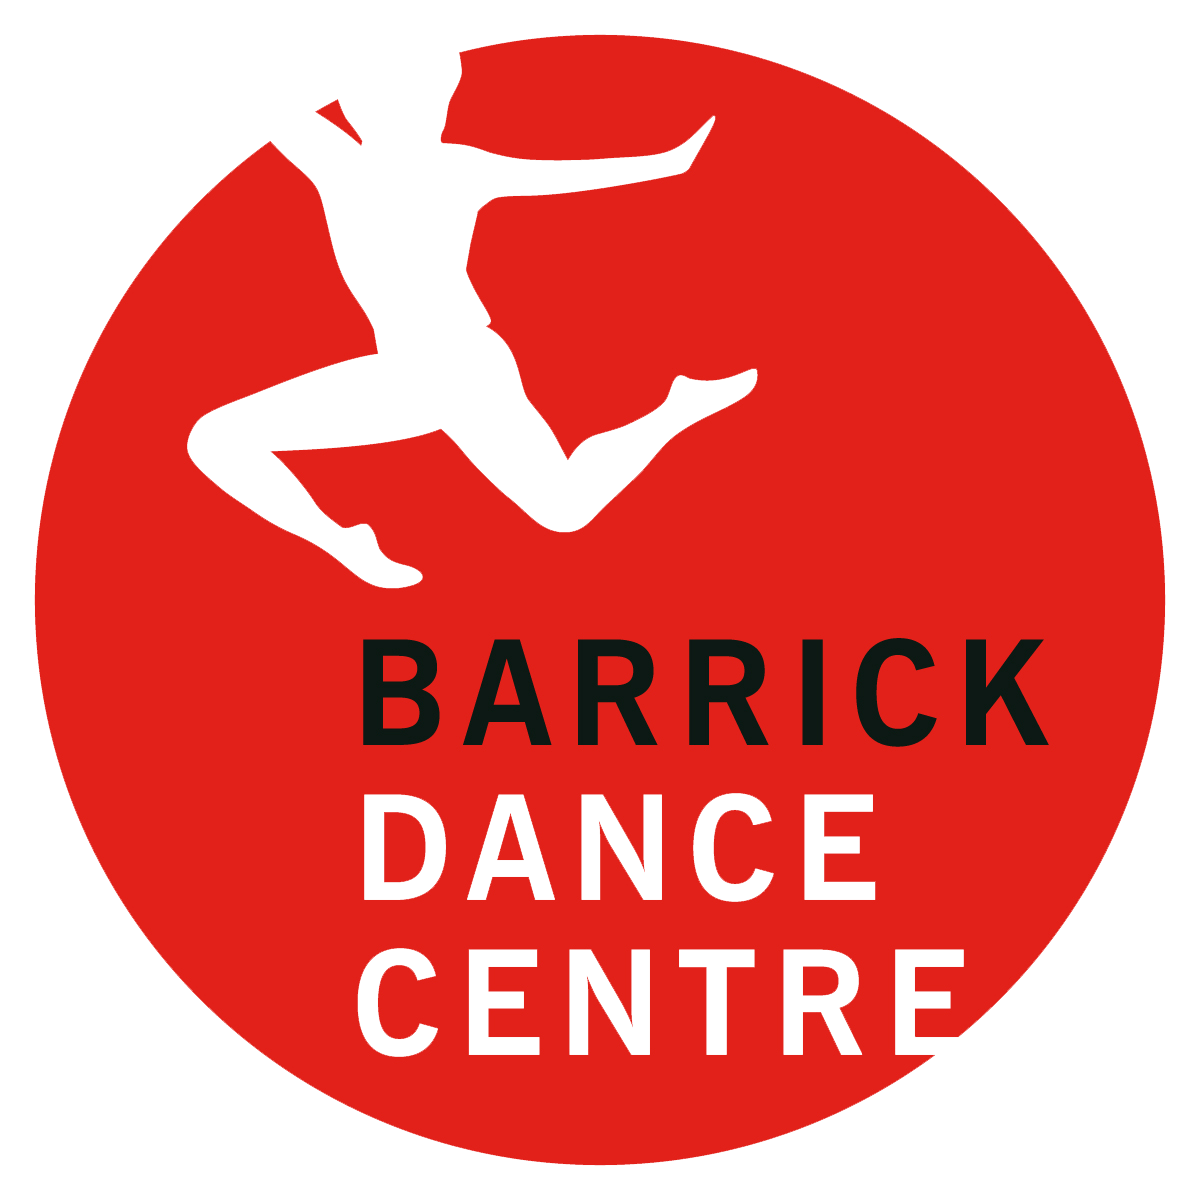 Barrick Logo - Barrick Dance Centre. Dancing for fun, technical achievement